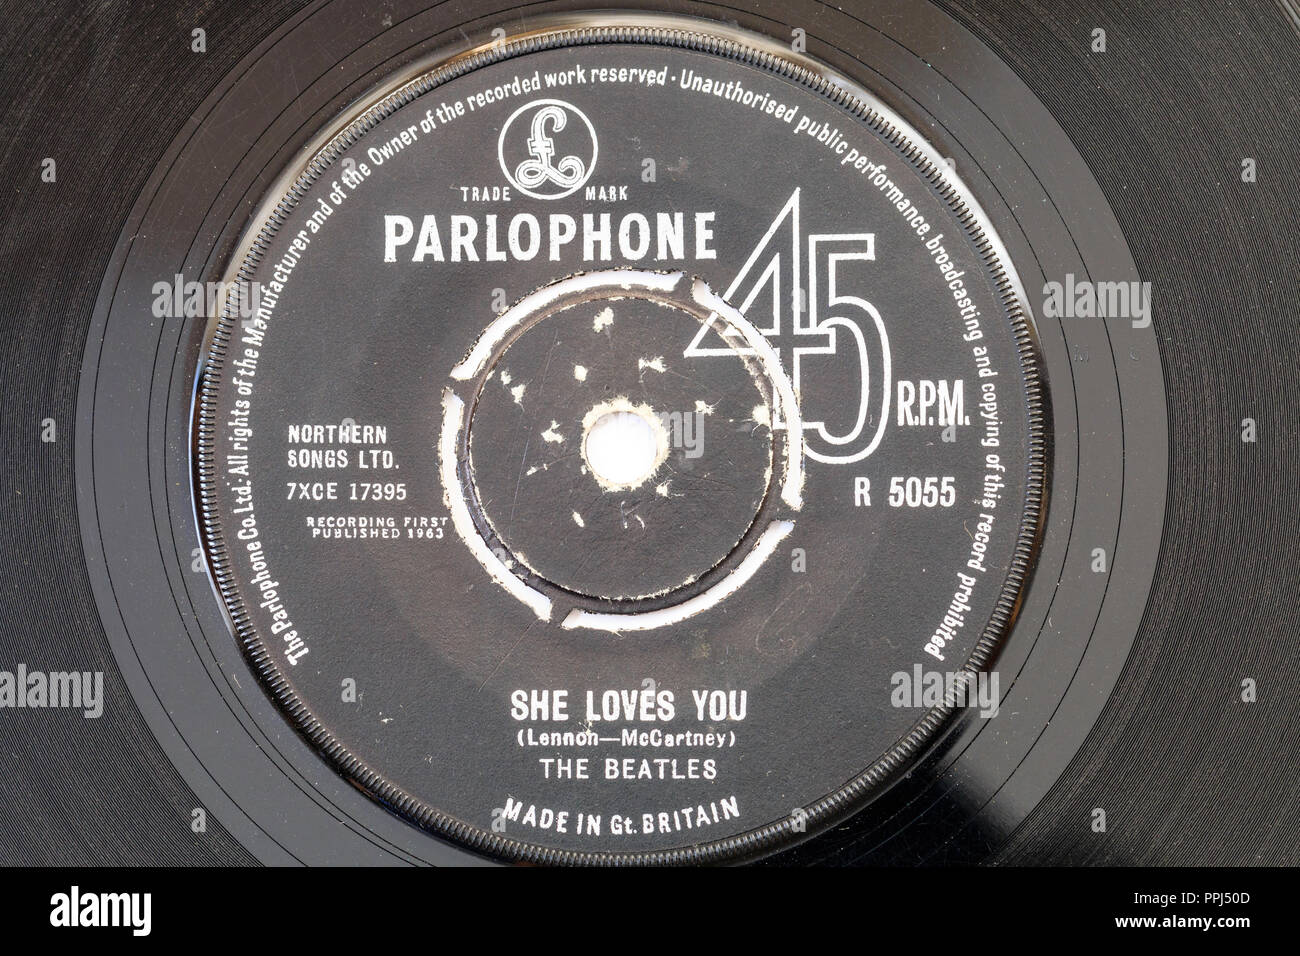 45 Single Track Record auf Parlophone label. Die Beatles, die er liebt Dich" von Lennon und McCartney. 1963 R5055 Stockfoto